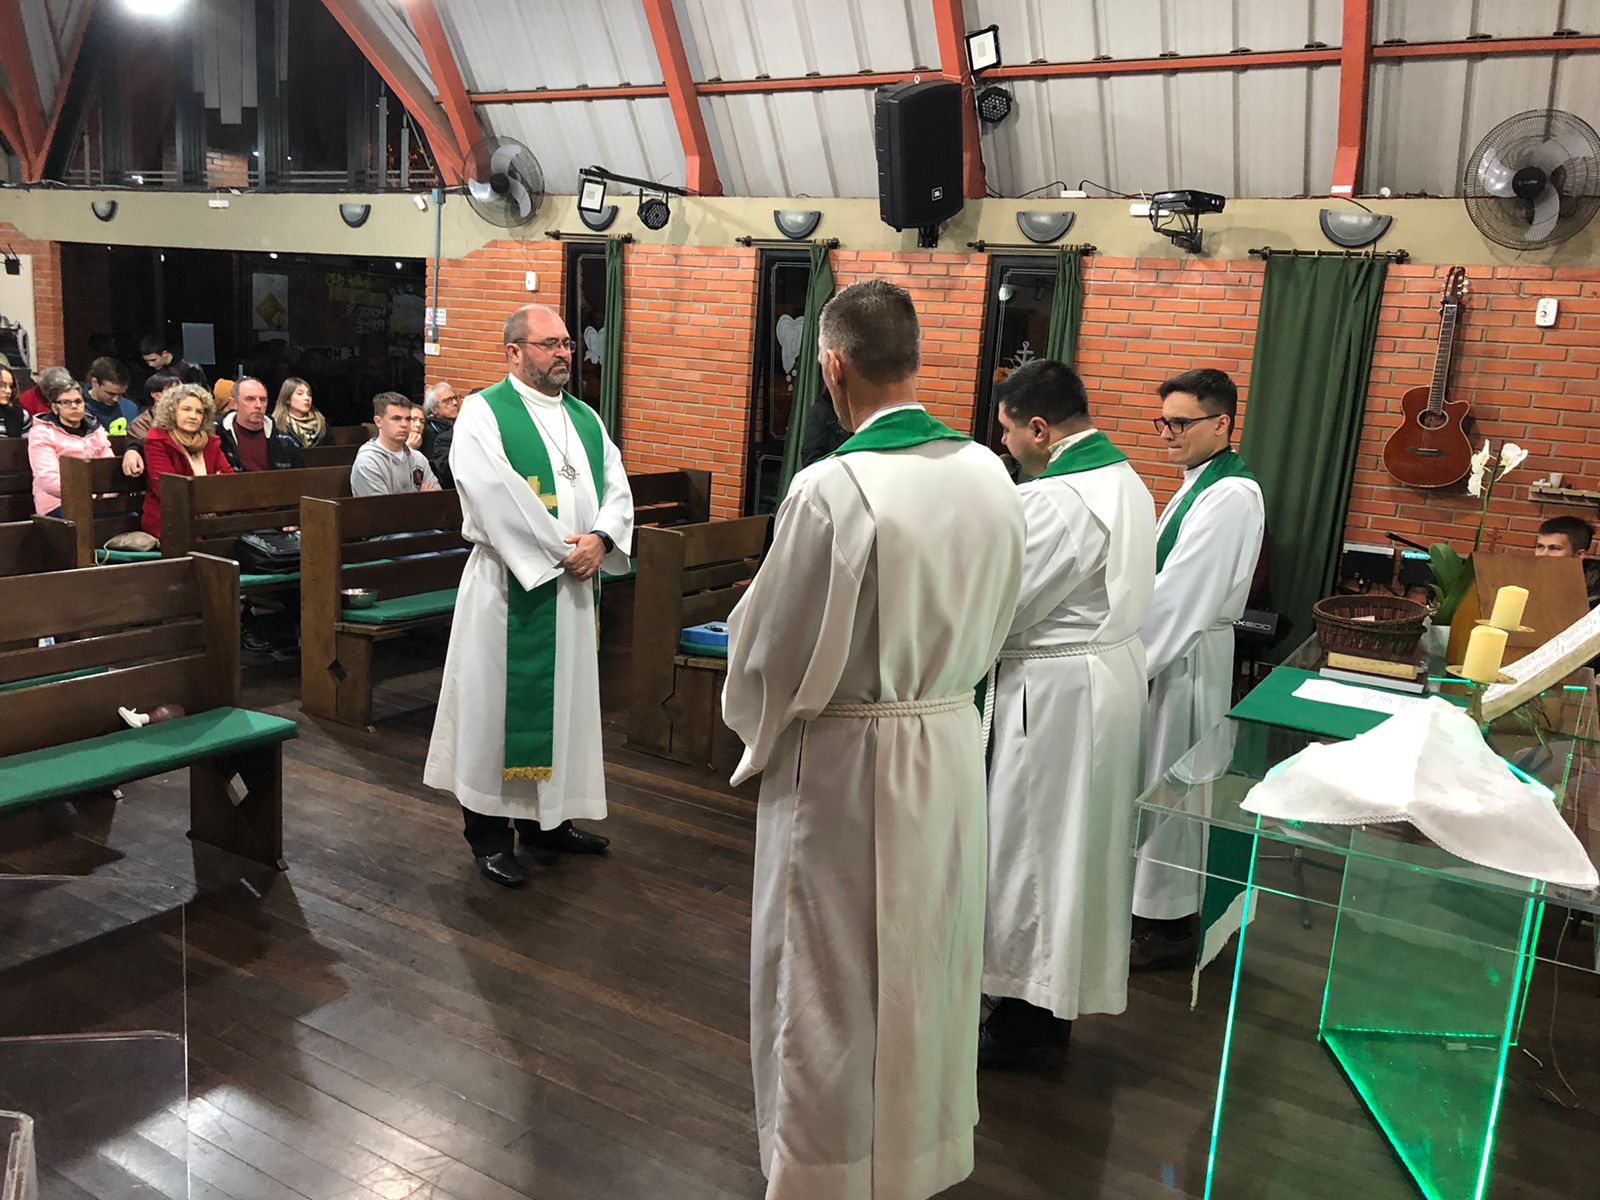 Desinstalação do pastor Ronaldo Hasse em Canoas, RS